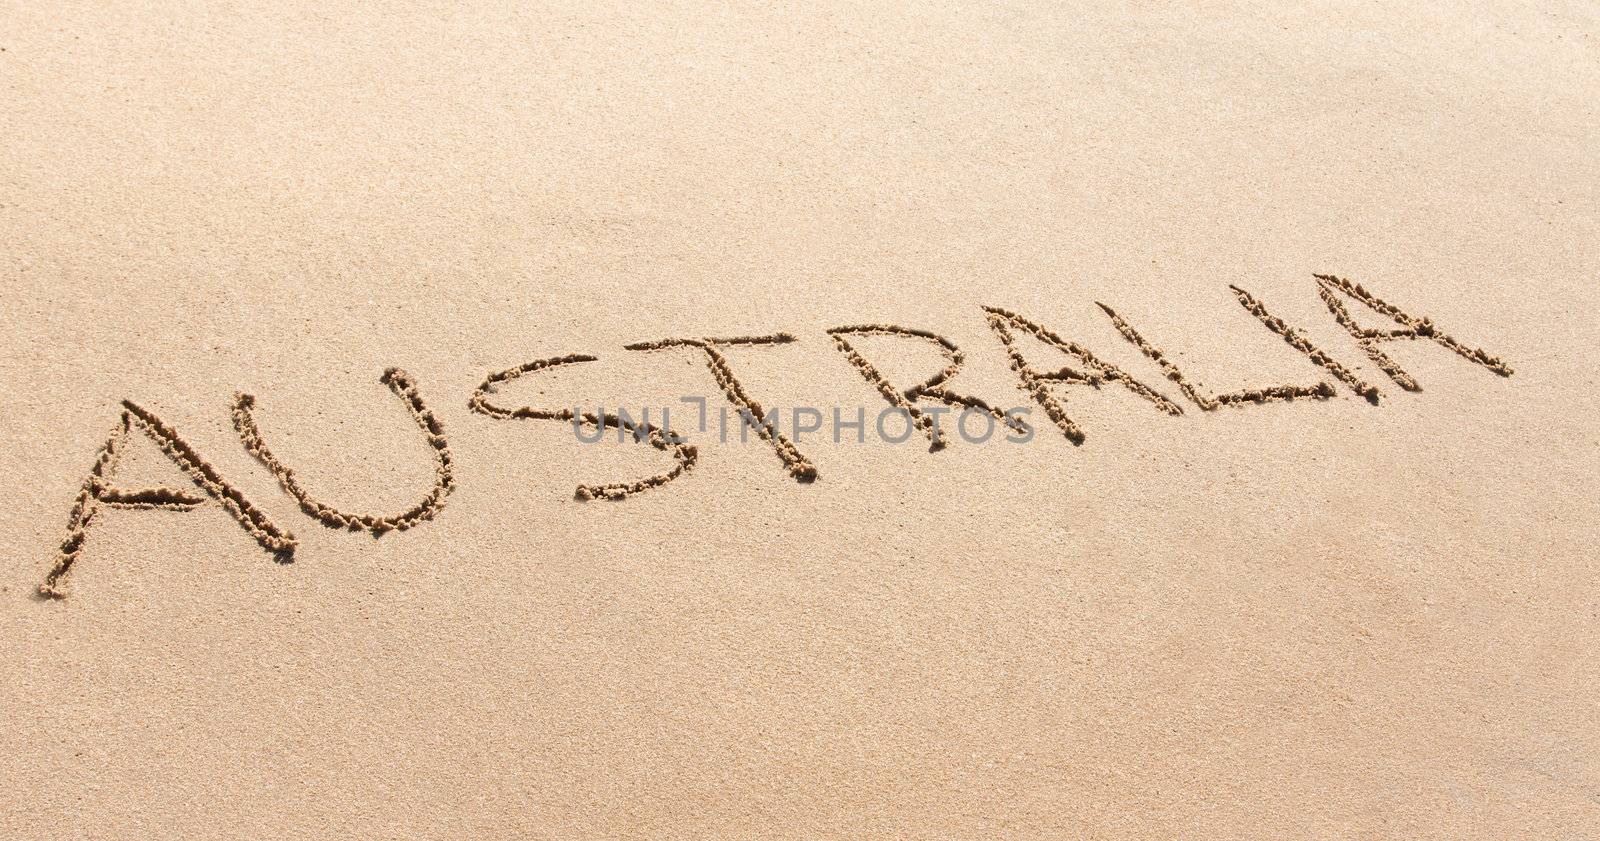 Australia written in the sand on a beach by Jaykayl